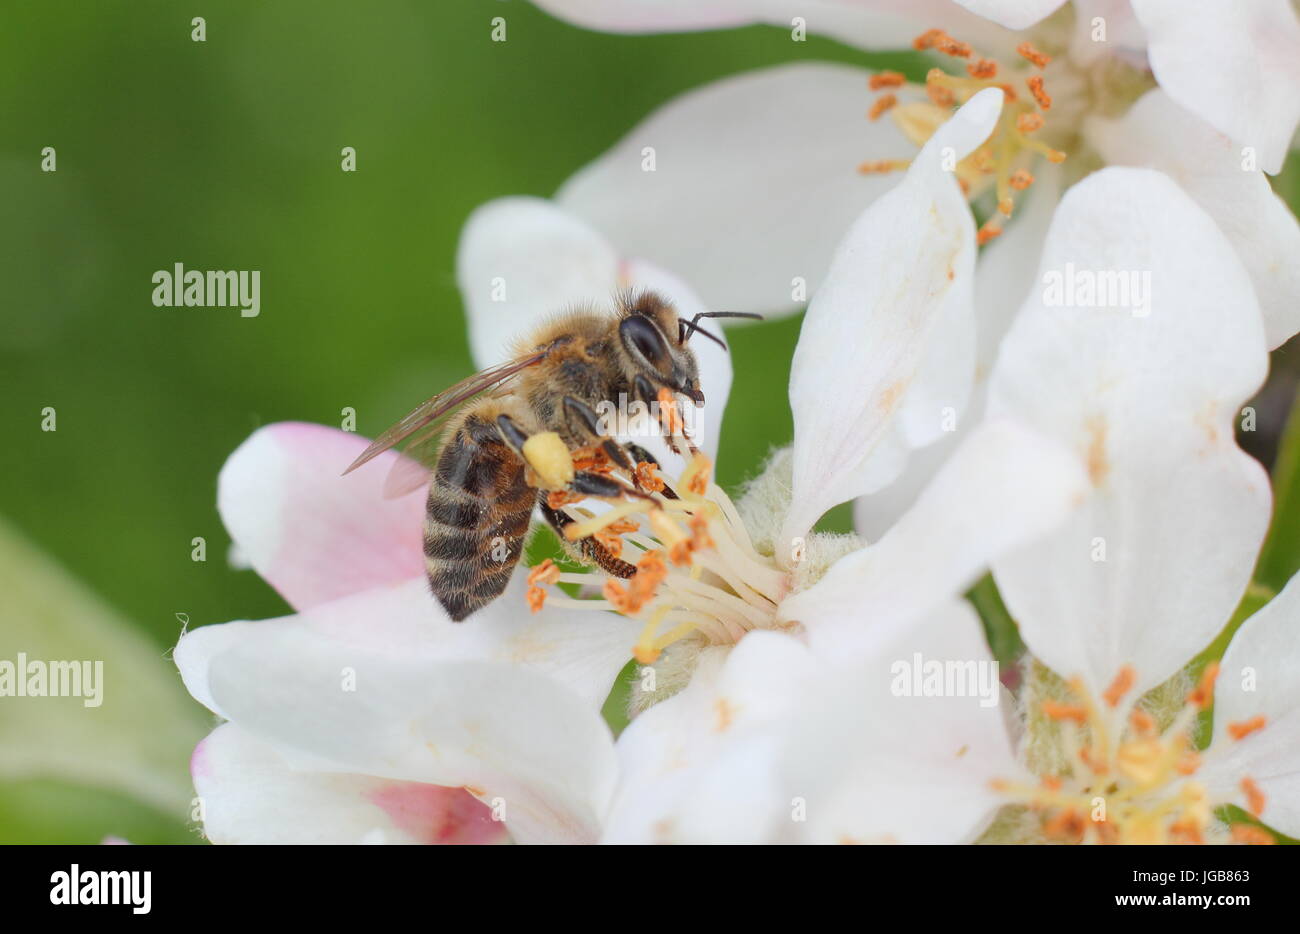 Il miele delle api (Apis mellifera) raccolta di nettare da primavera sbocciano i fiori di malus domestica " Katy", apple tree in un inglese un frutteto a maggio, Regno Unito Foto Stock